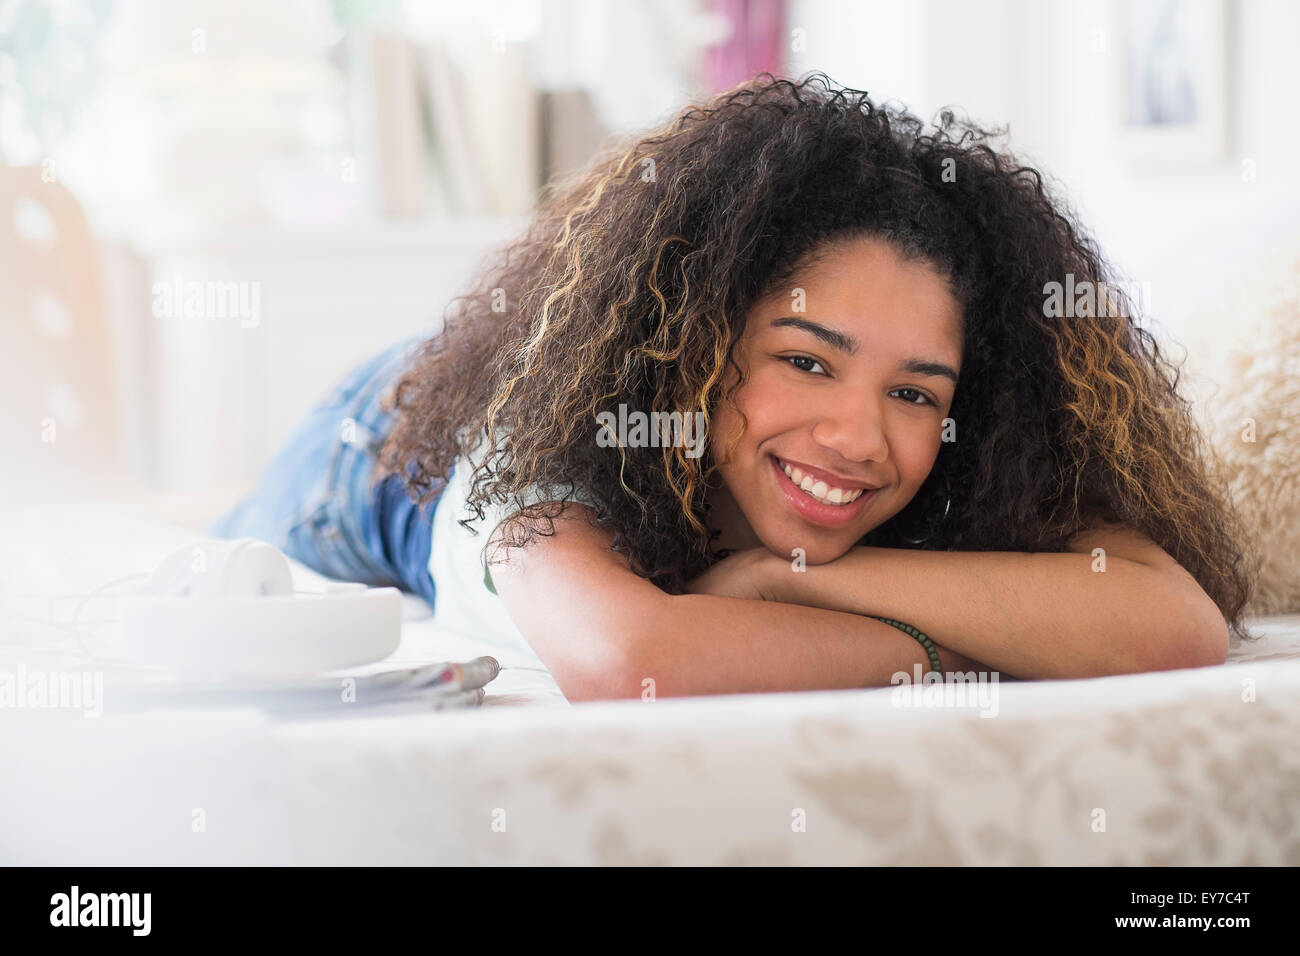 Portrait of teenage girl (16-17) lying on bed Stock Photo